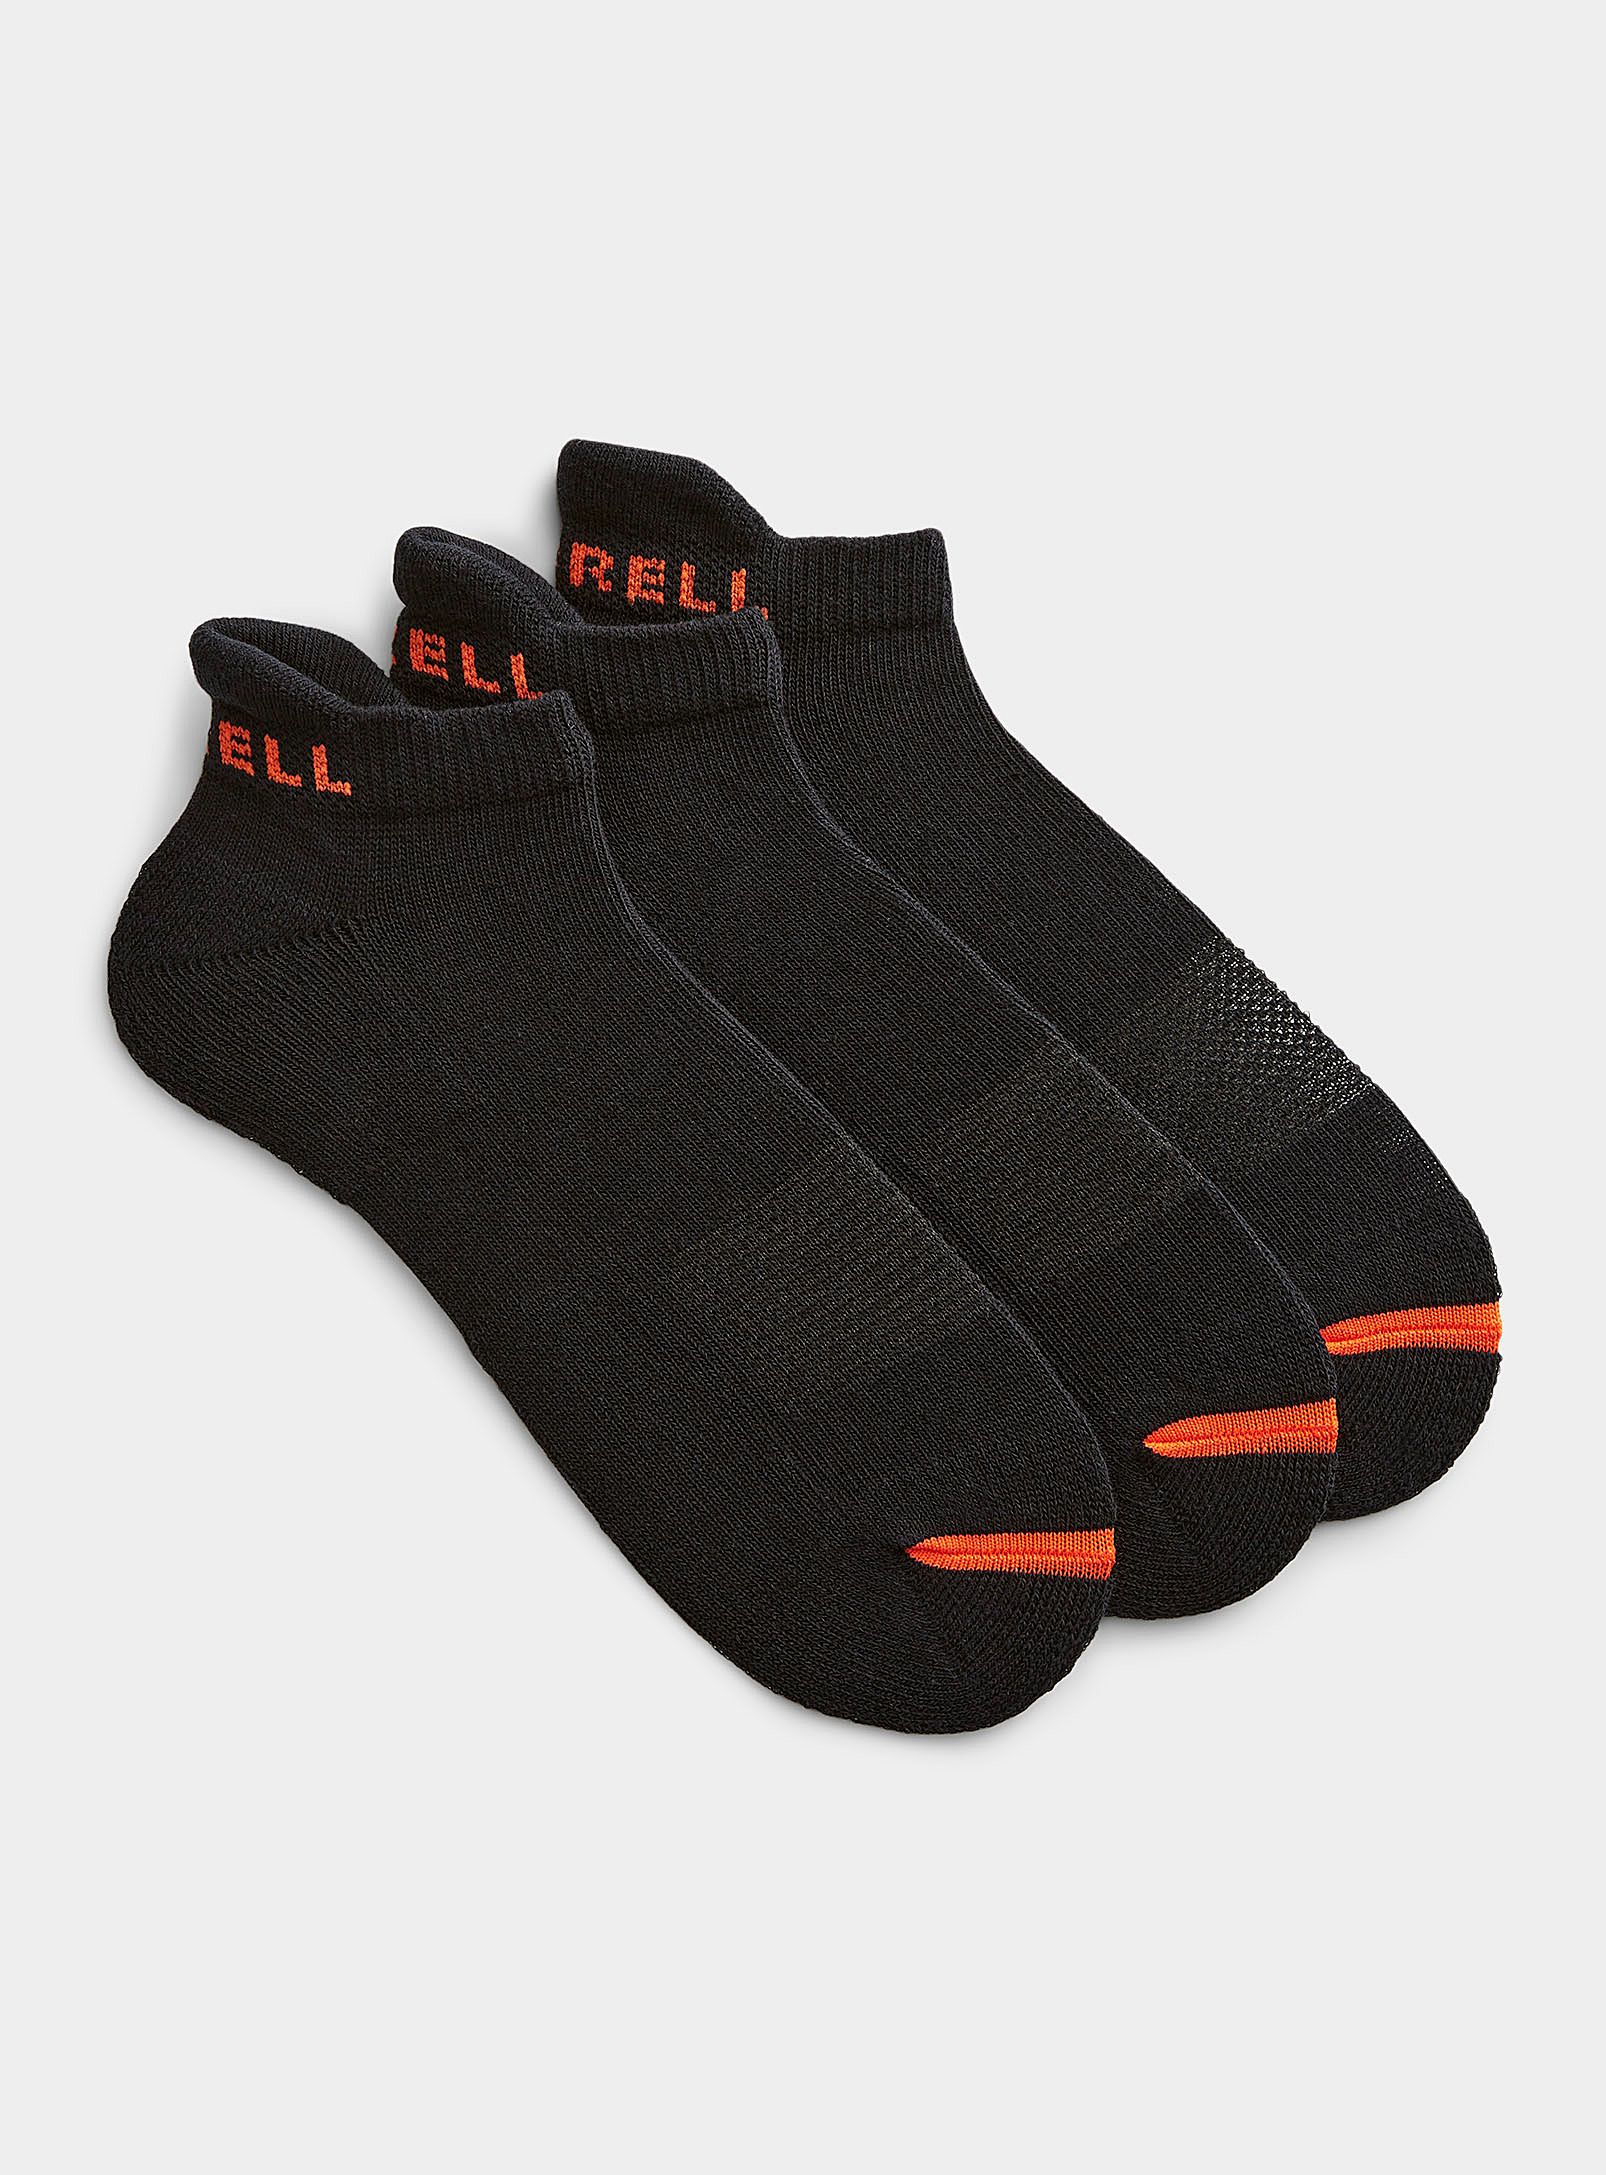 Merrell - Men's Performance reinforced ped socks 3-pack